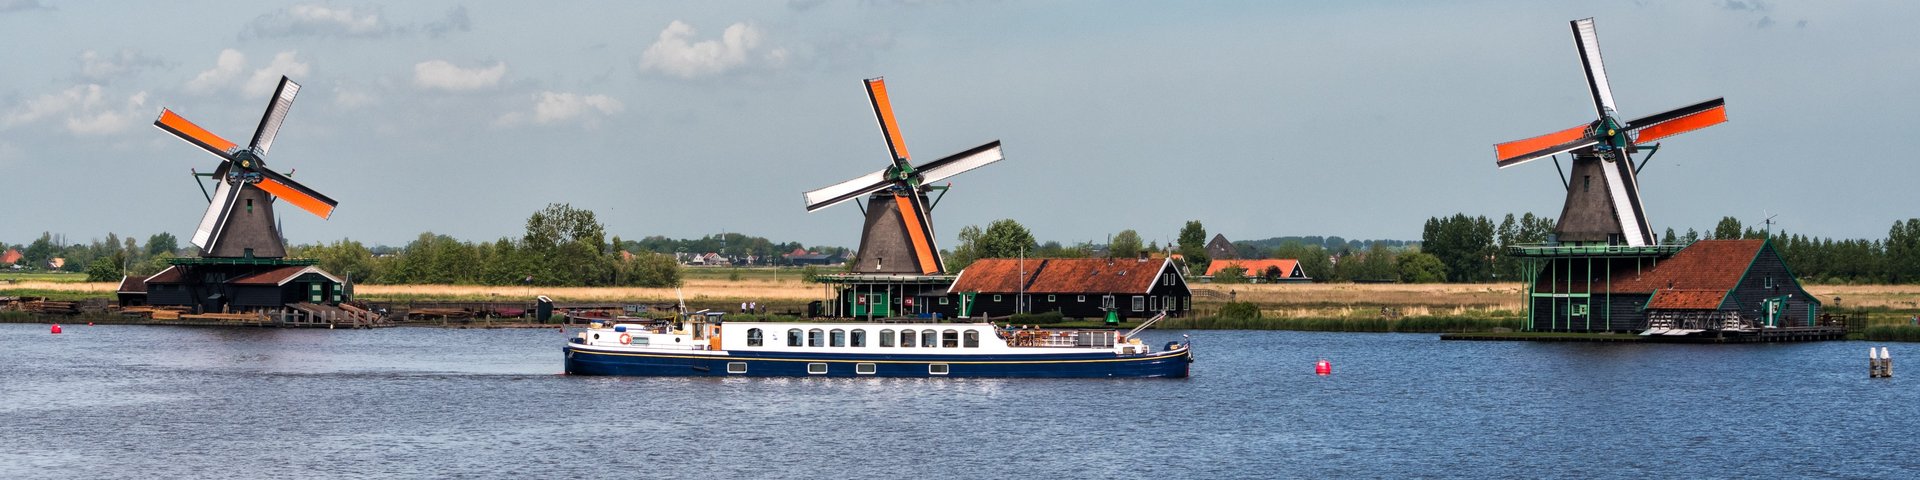 Hotelschiff Panache vor Windmühlen in Holland